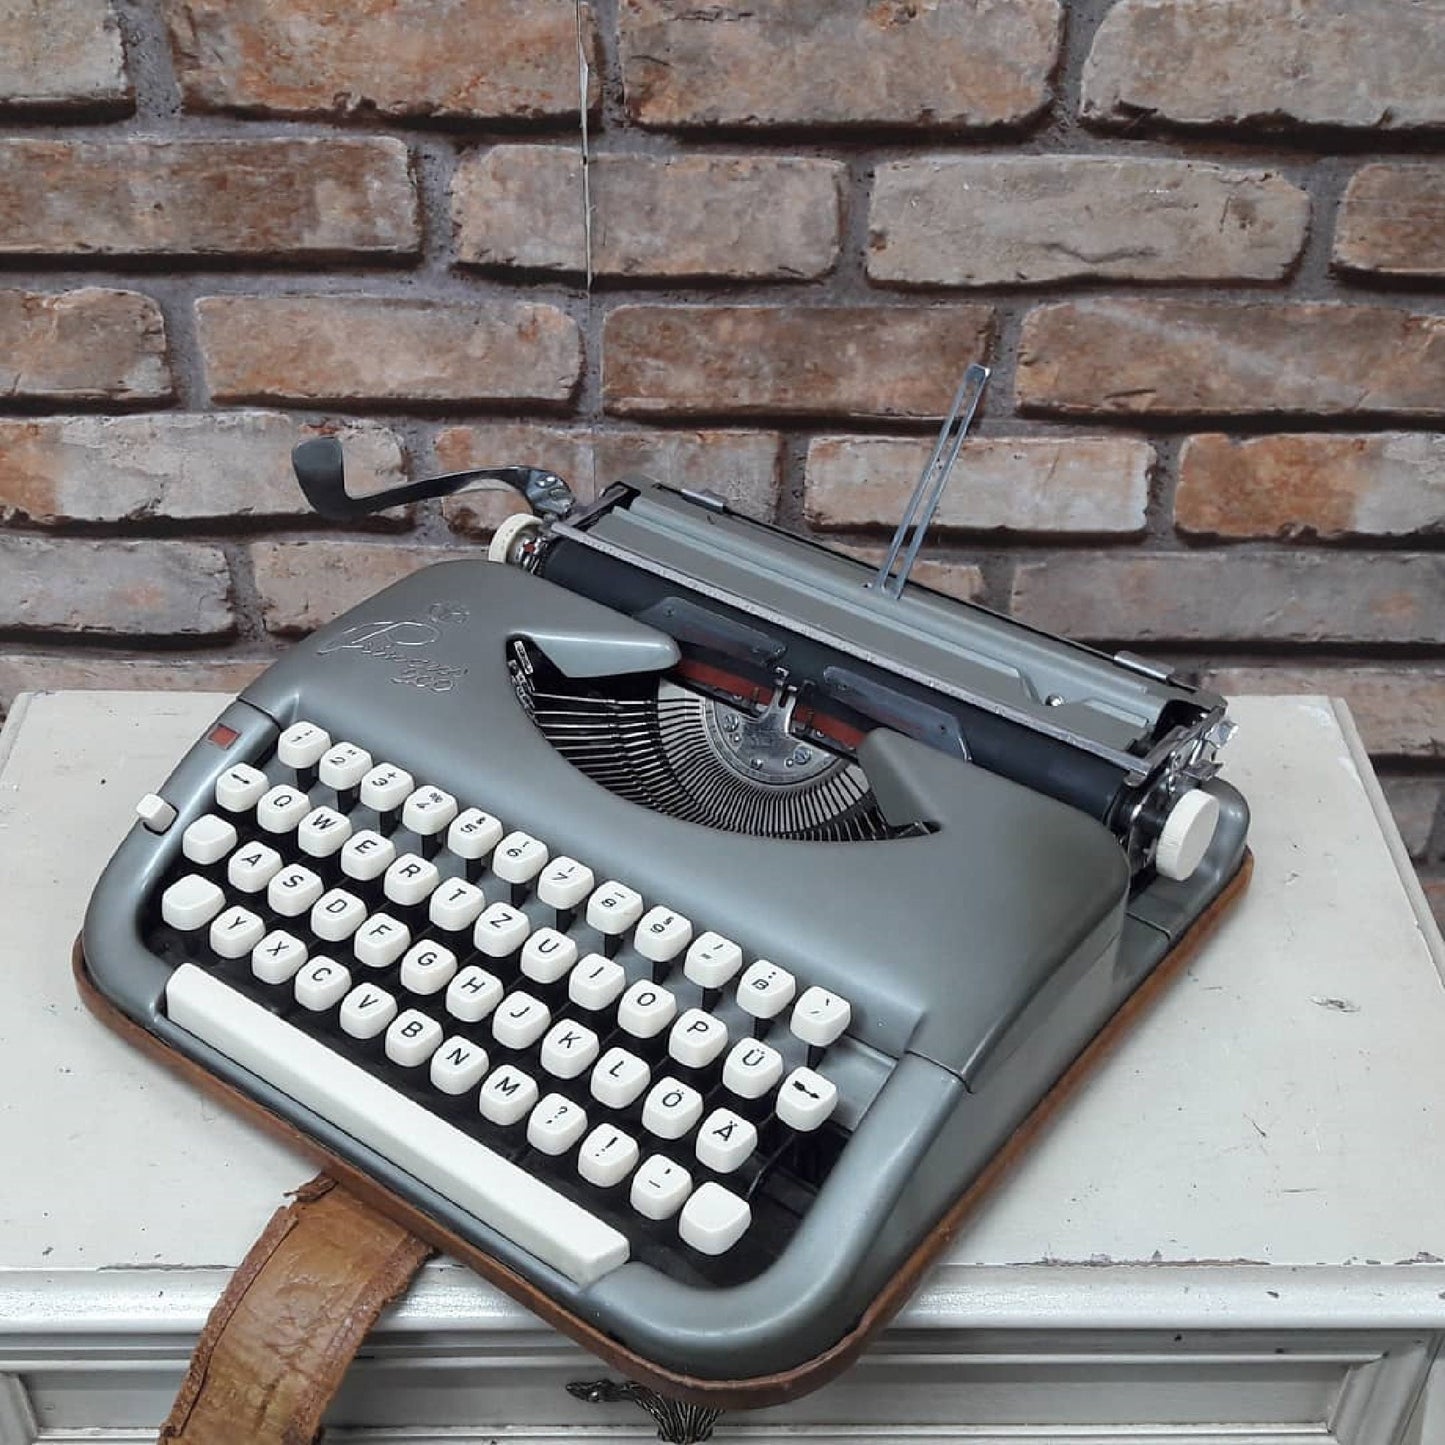 Princess 200 Typewriter, antique typewriter,old typewriter,typewriter working